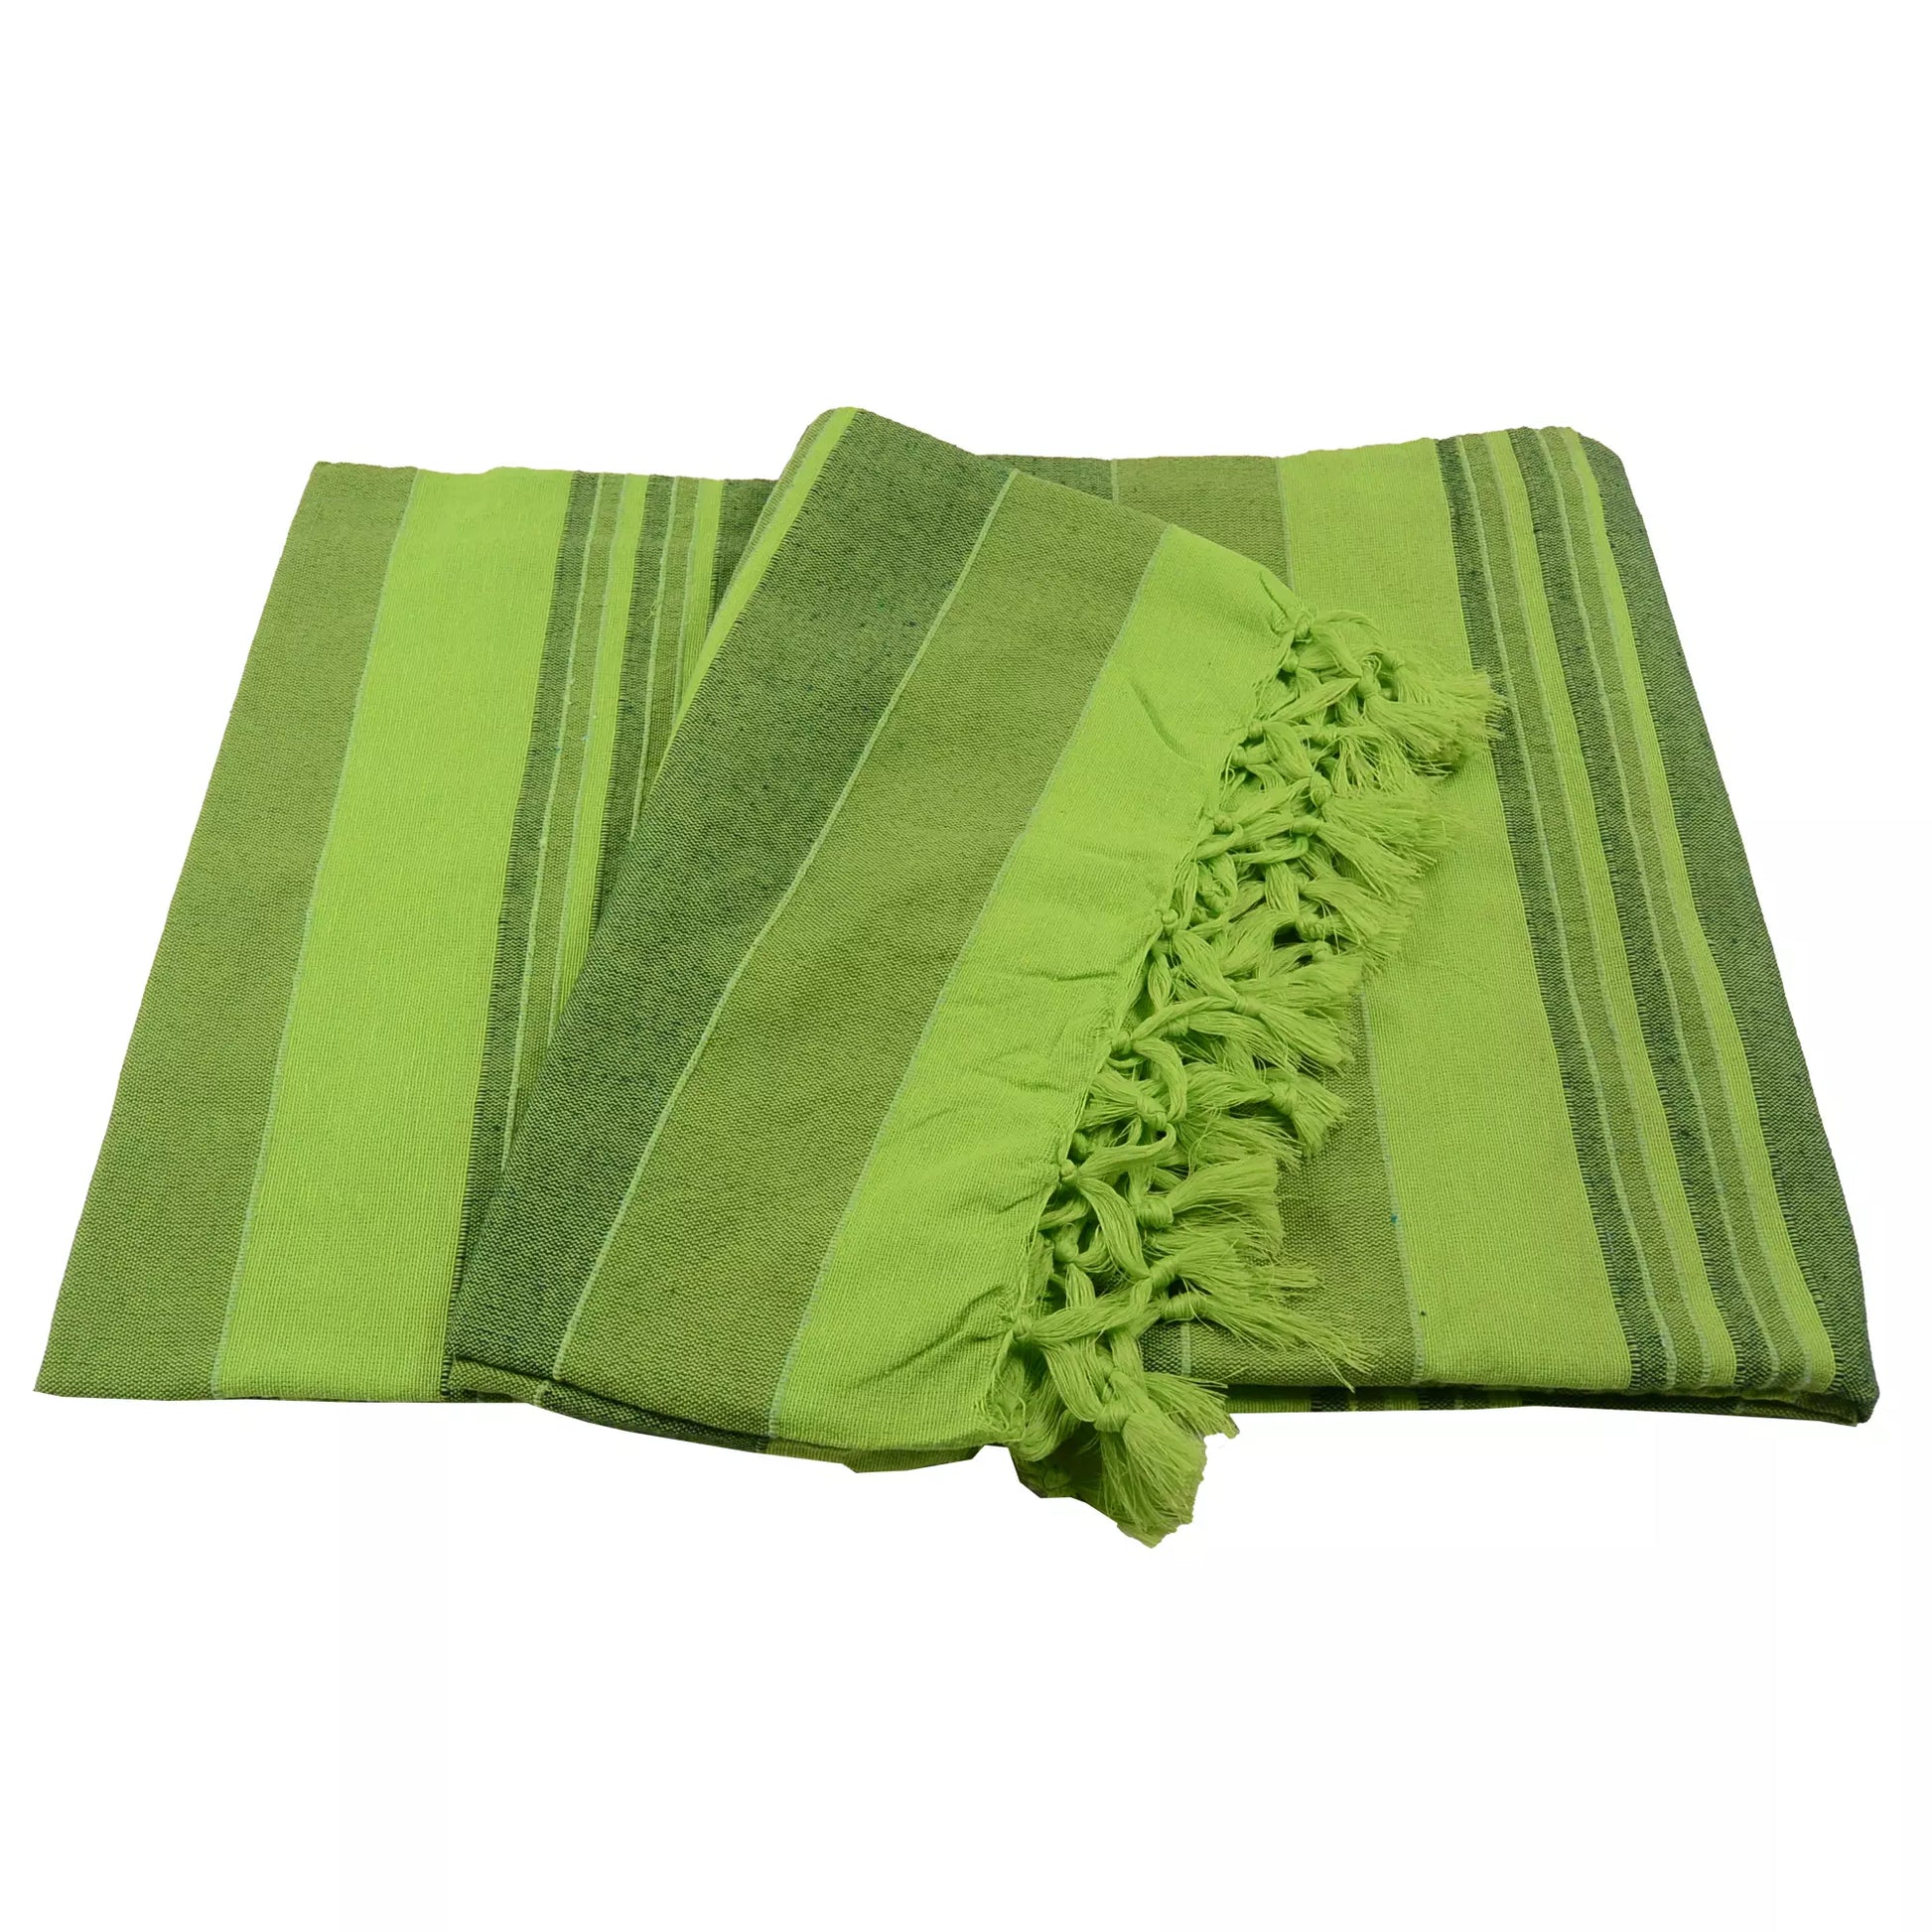 Tagesdecke, Decke aus Baumwolle mit Streifen in verschiedenen Grüntönen. Apfelgrüne Fransen versäumen den Rand an zwei Seiten.